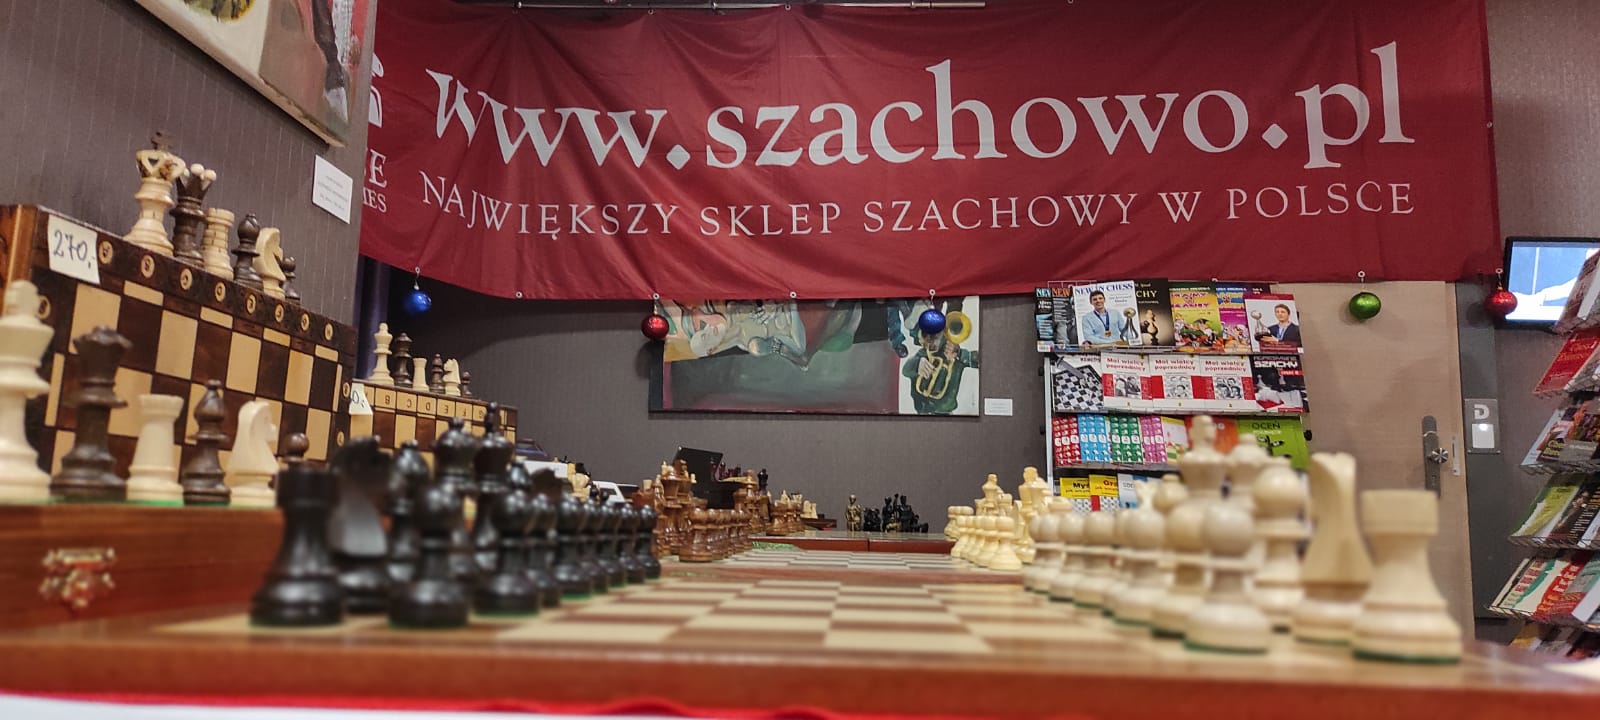 szachowo.pl producent szachów drewnianych